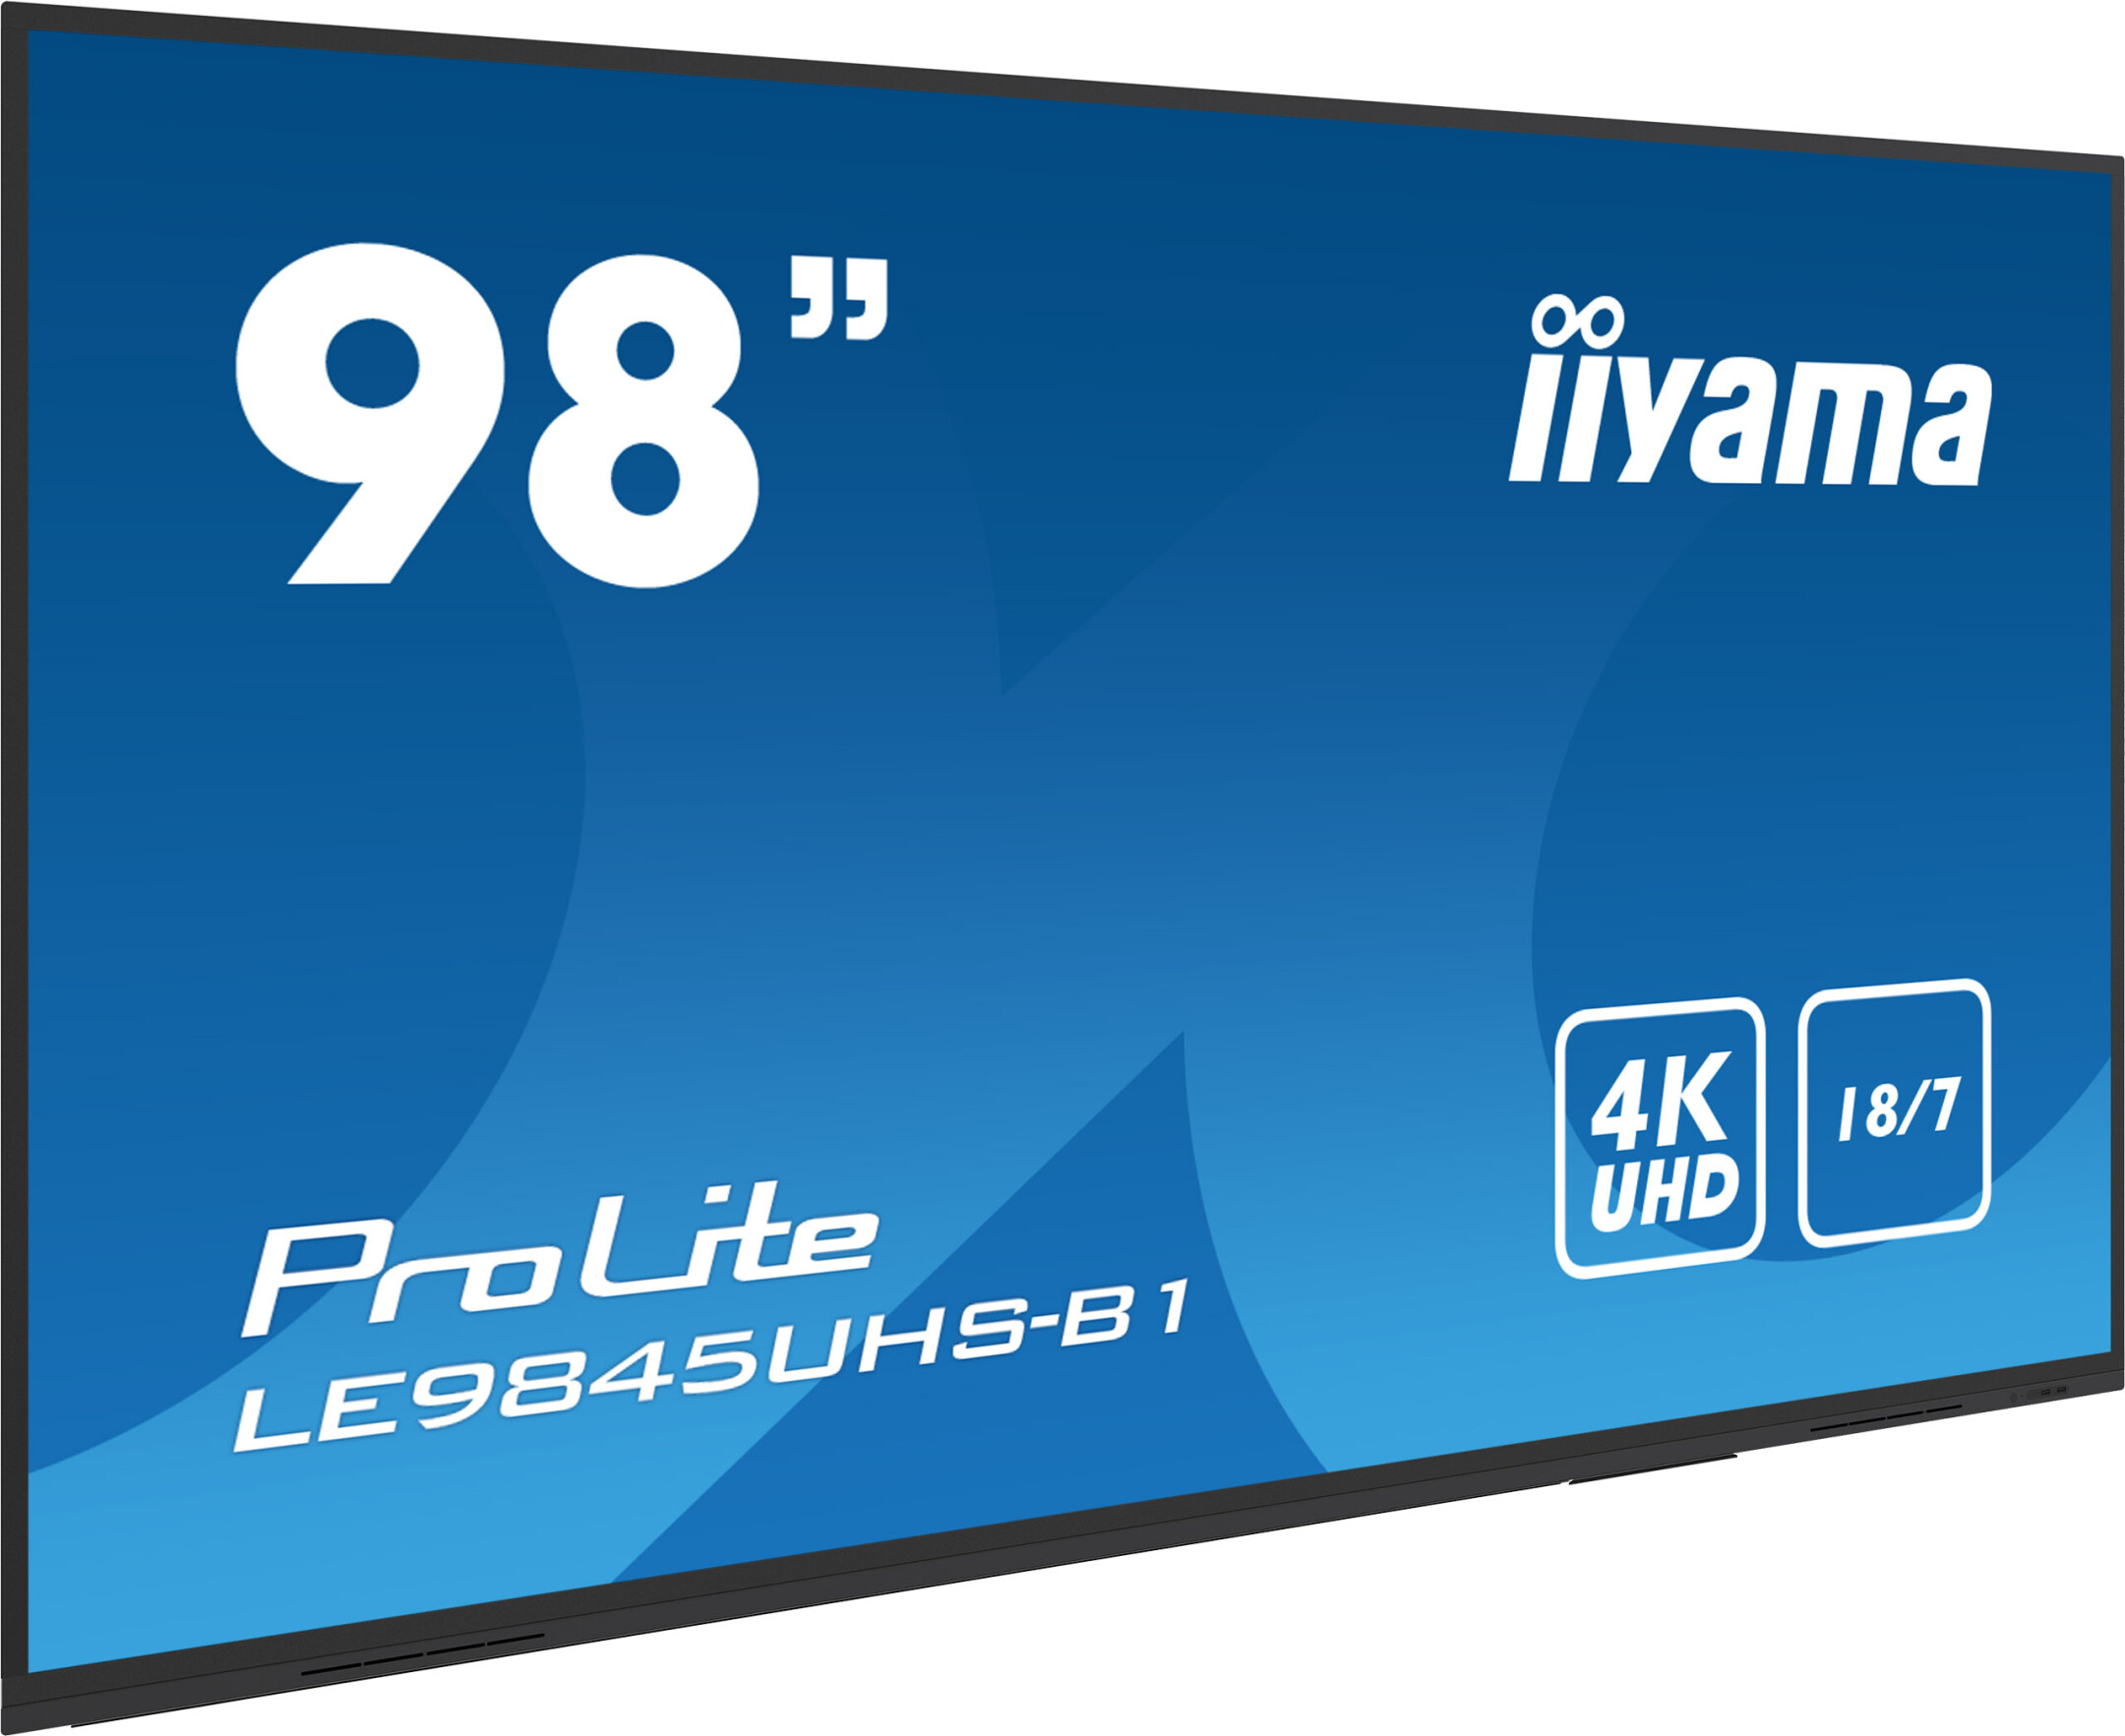 Iiyama-PROLITE-LE9845UHS-B1